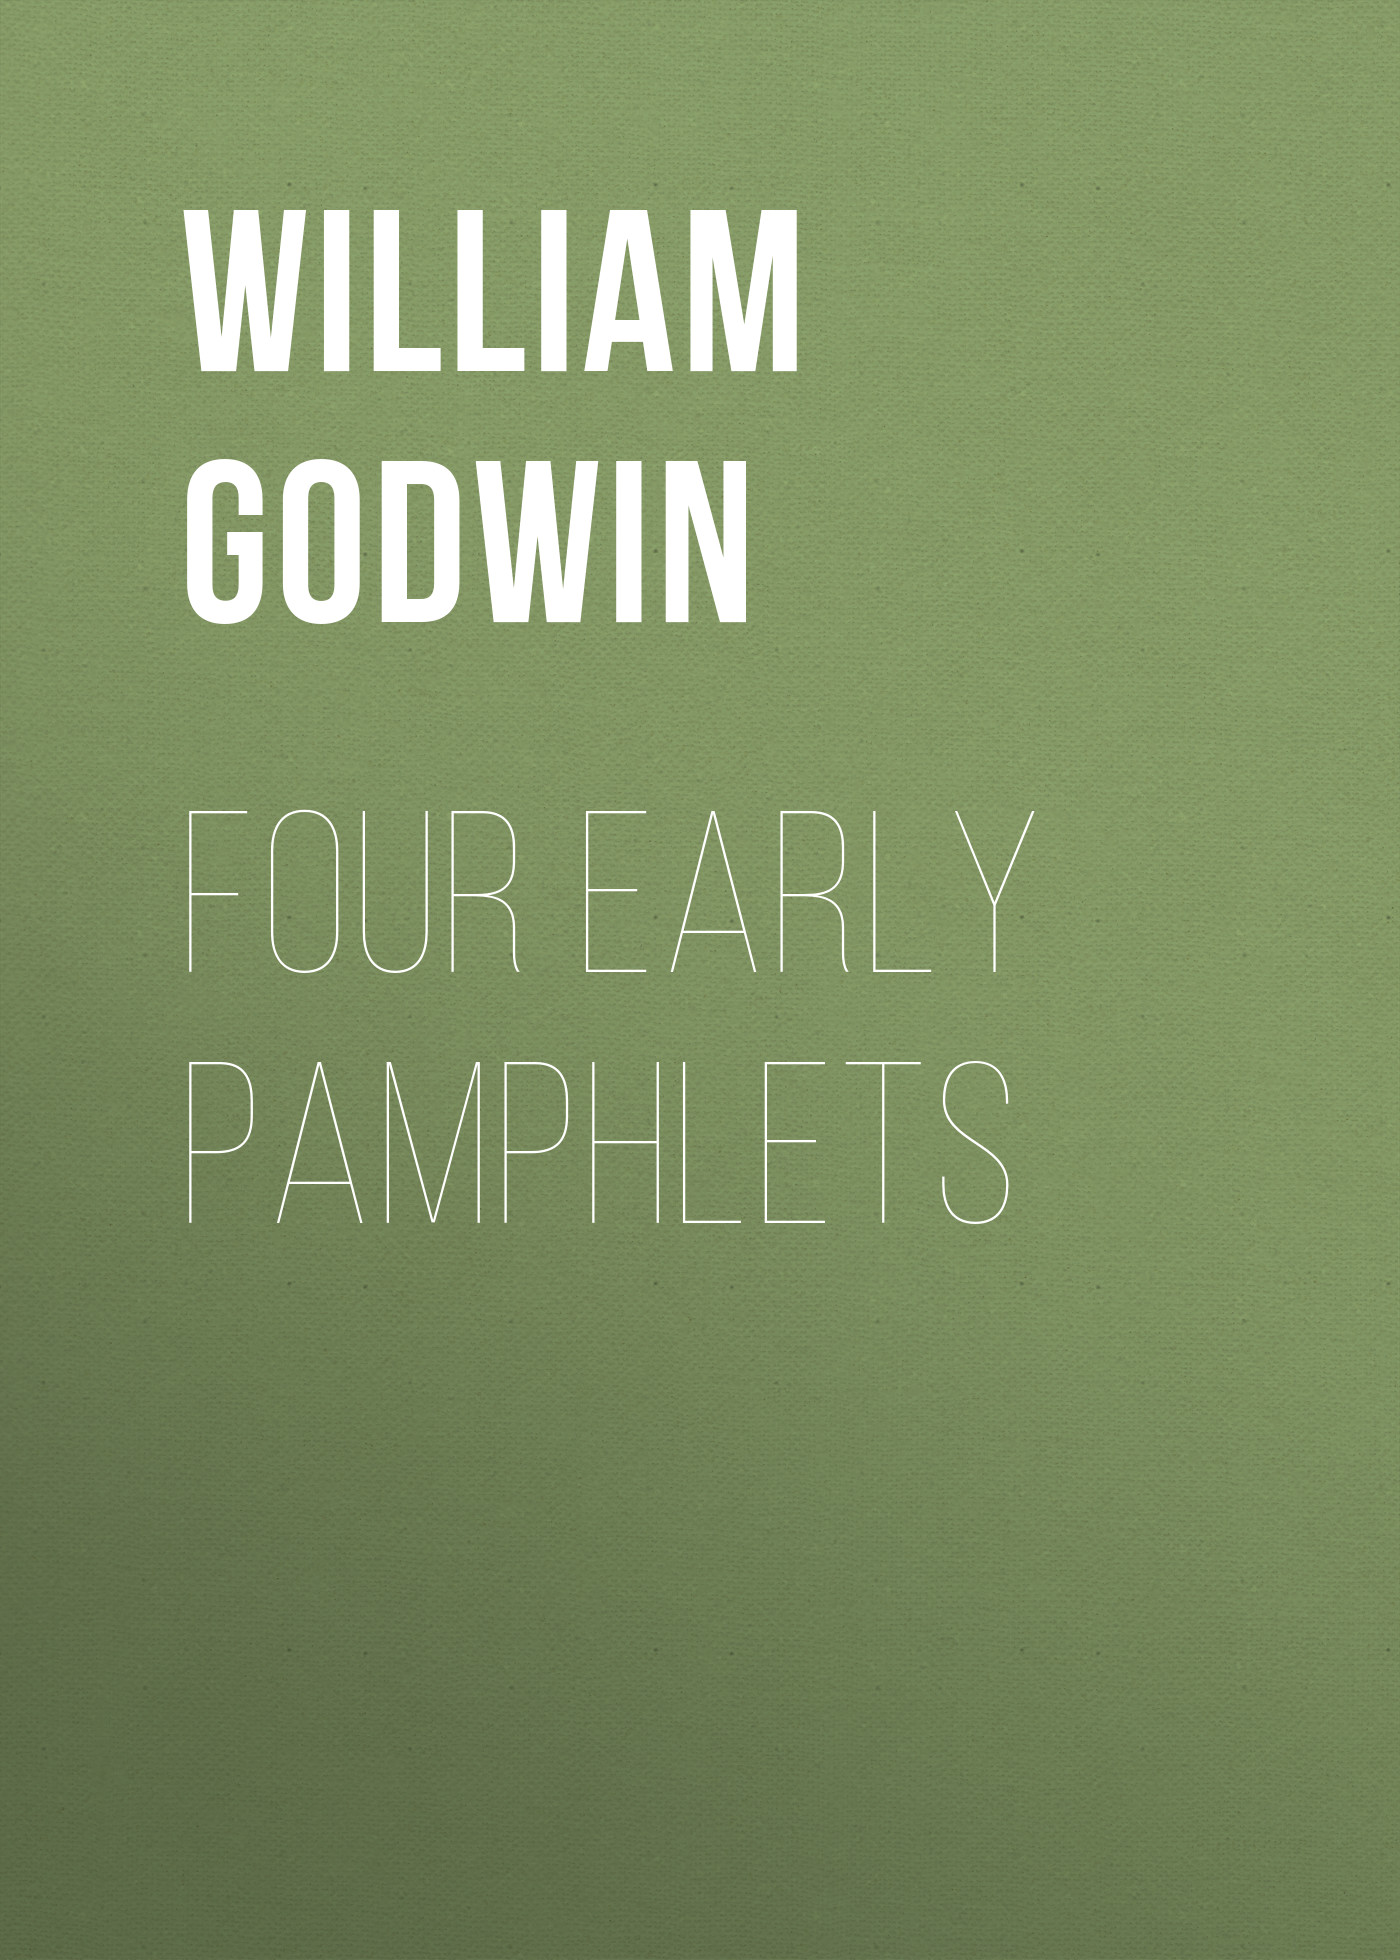 Книга Four Early Pamphlets из серии , созданная William Godwin, может относится к жанру Зарубежная классика, Европейская старинная литература. Стоимость электронной книги Four Early Pamphlets с идентификатором 36095973 составляет 0 руб.